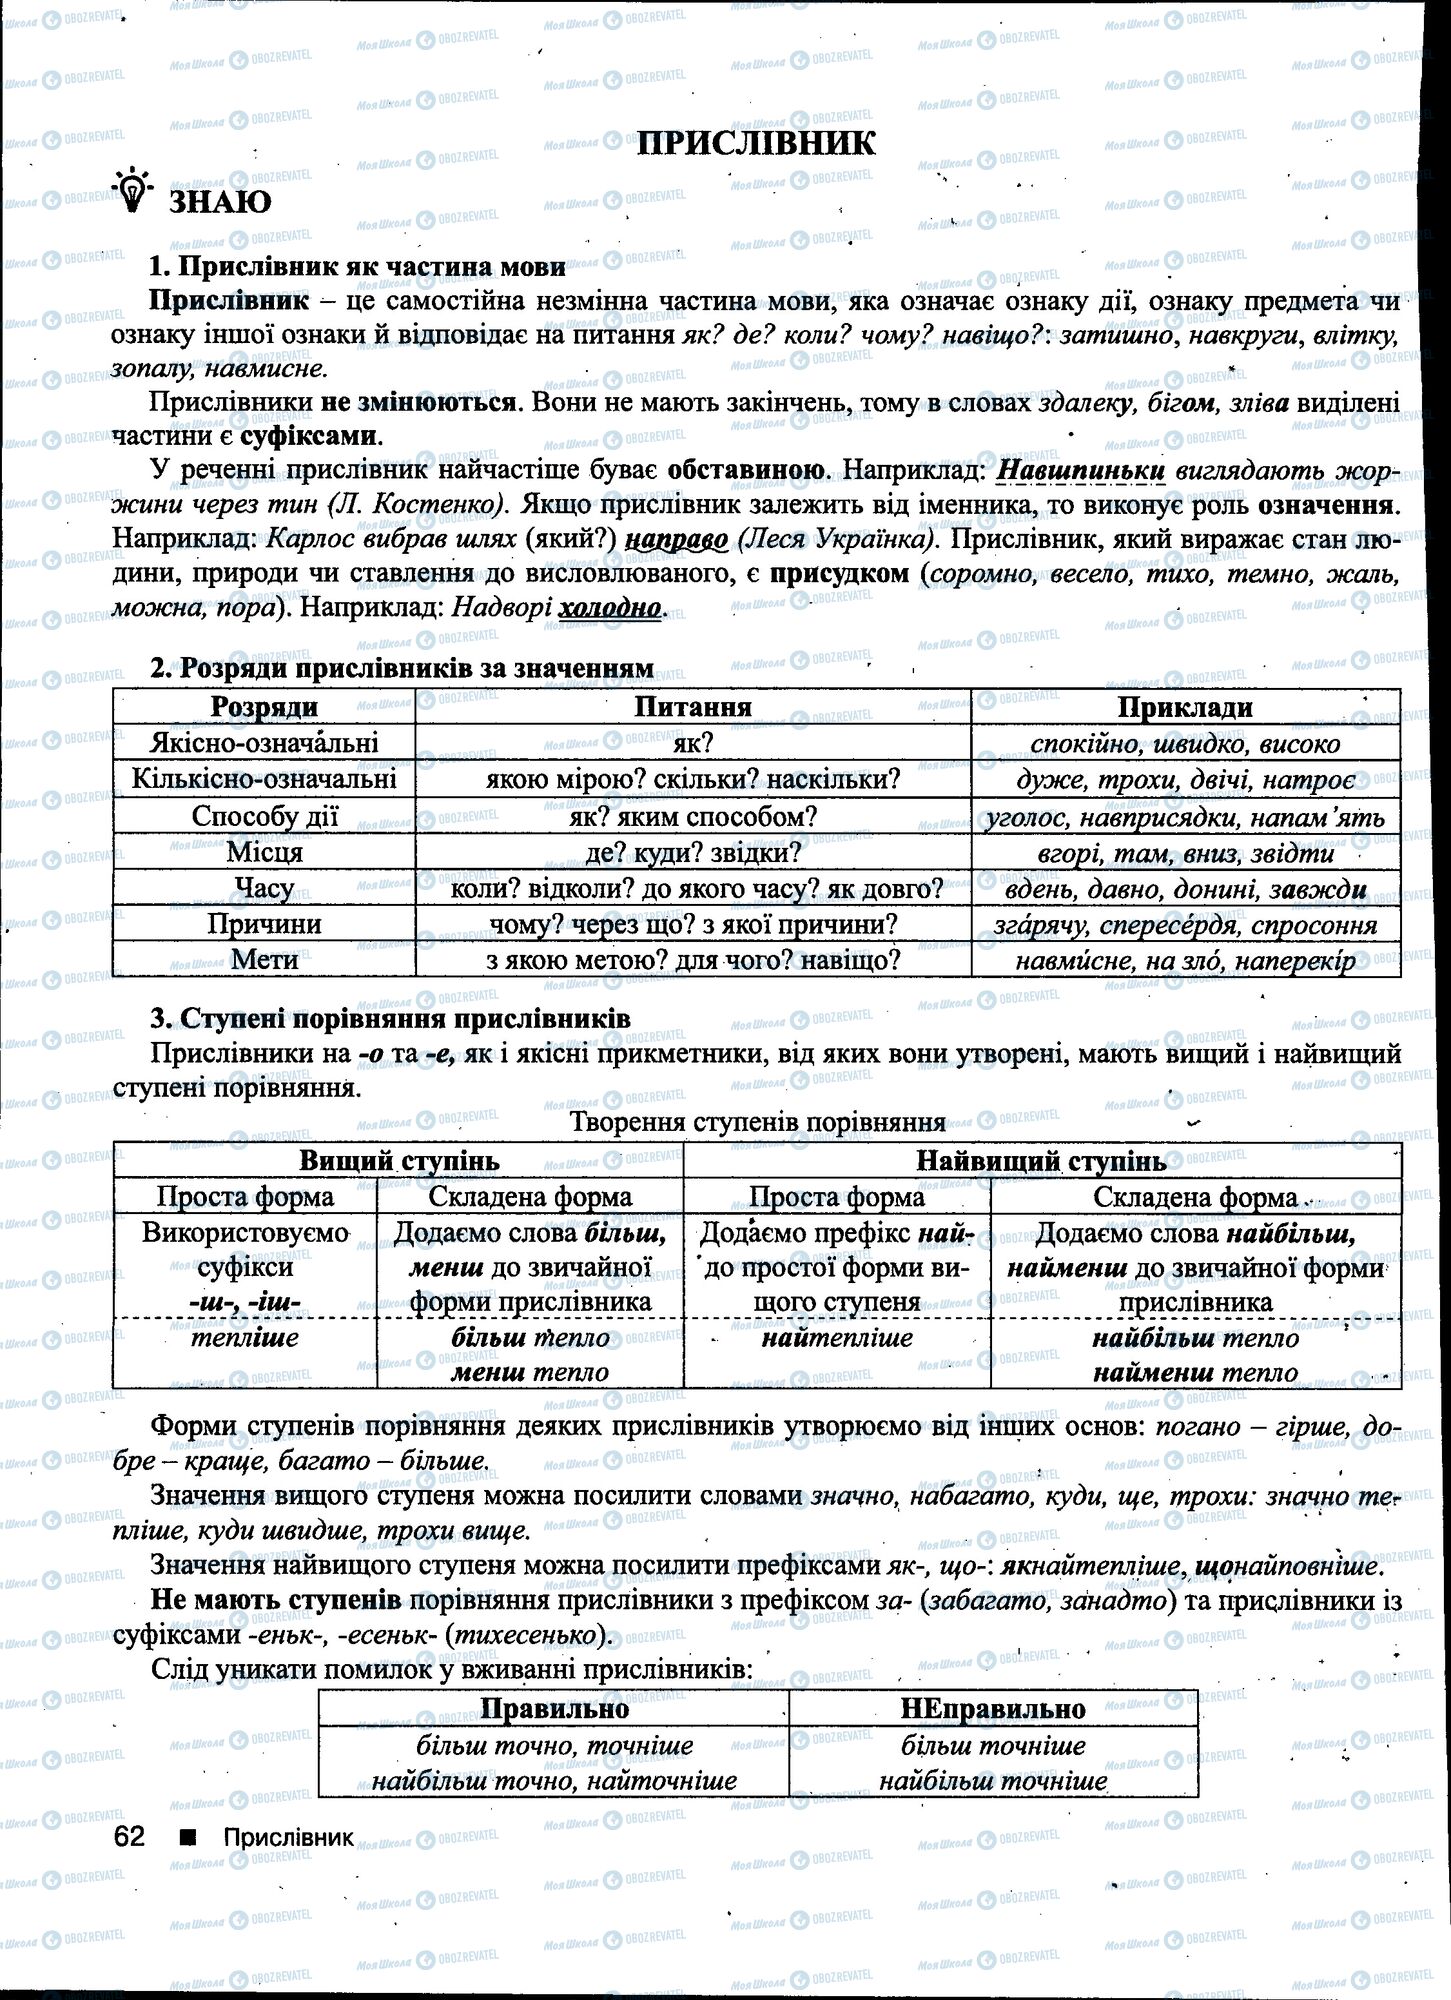 ДПА Укр мова 11 класс страница 062